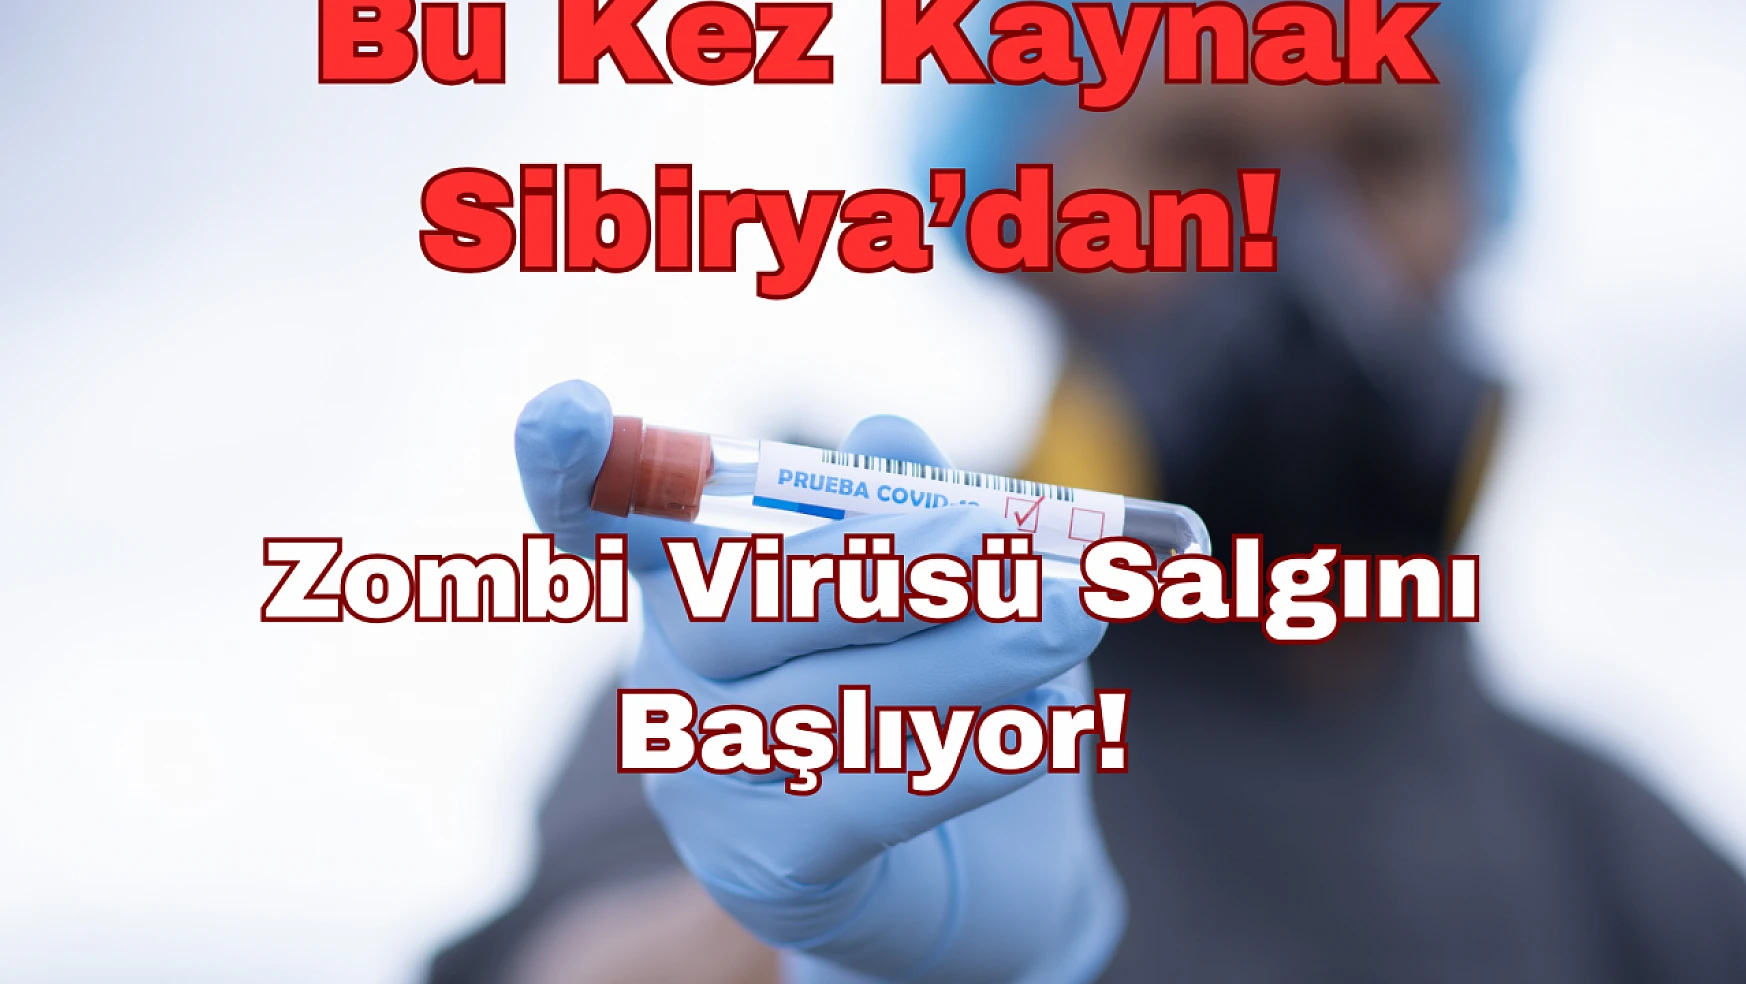 Bu Kez Kaynak Sibirya'dan: Zombi Virüsü Salgını Başlıyor!